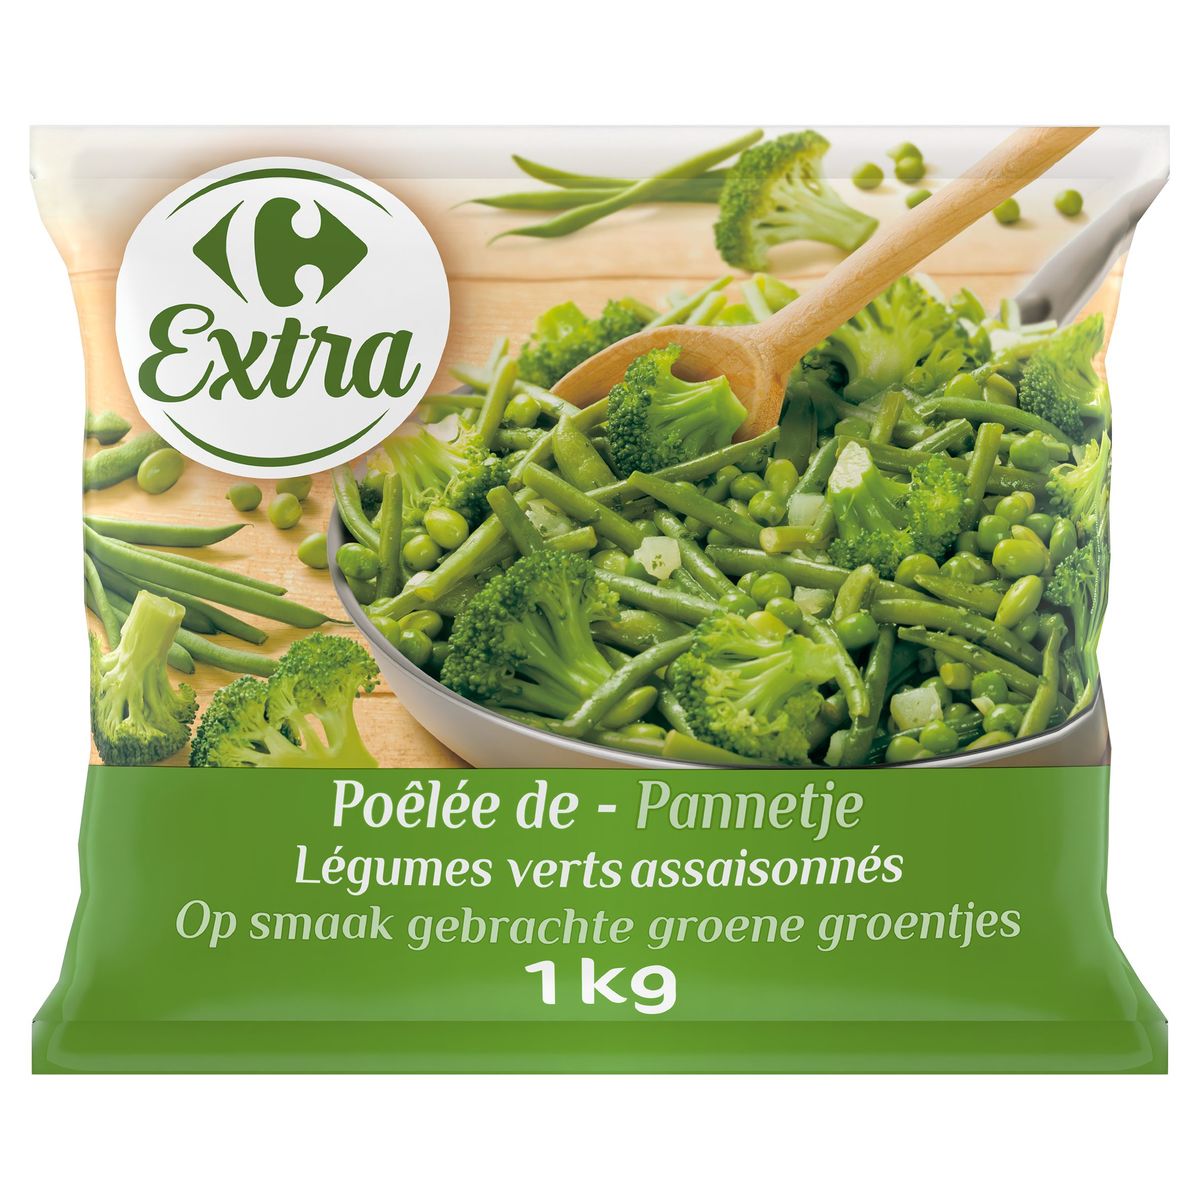 Carrefour Extra Pannetje op Smaak Gebrachte Groene Groentjes 1 kg